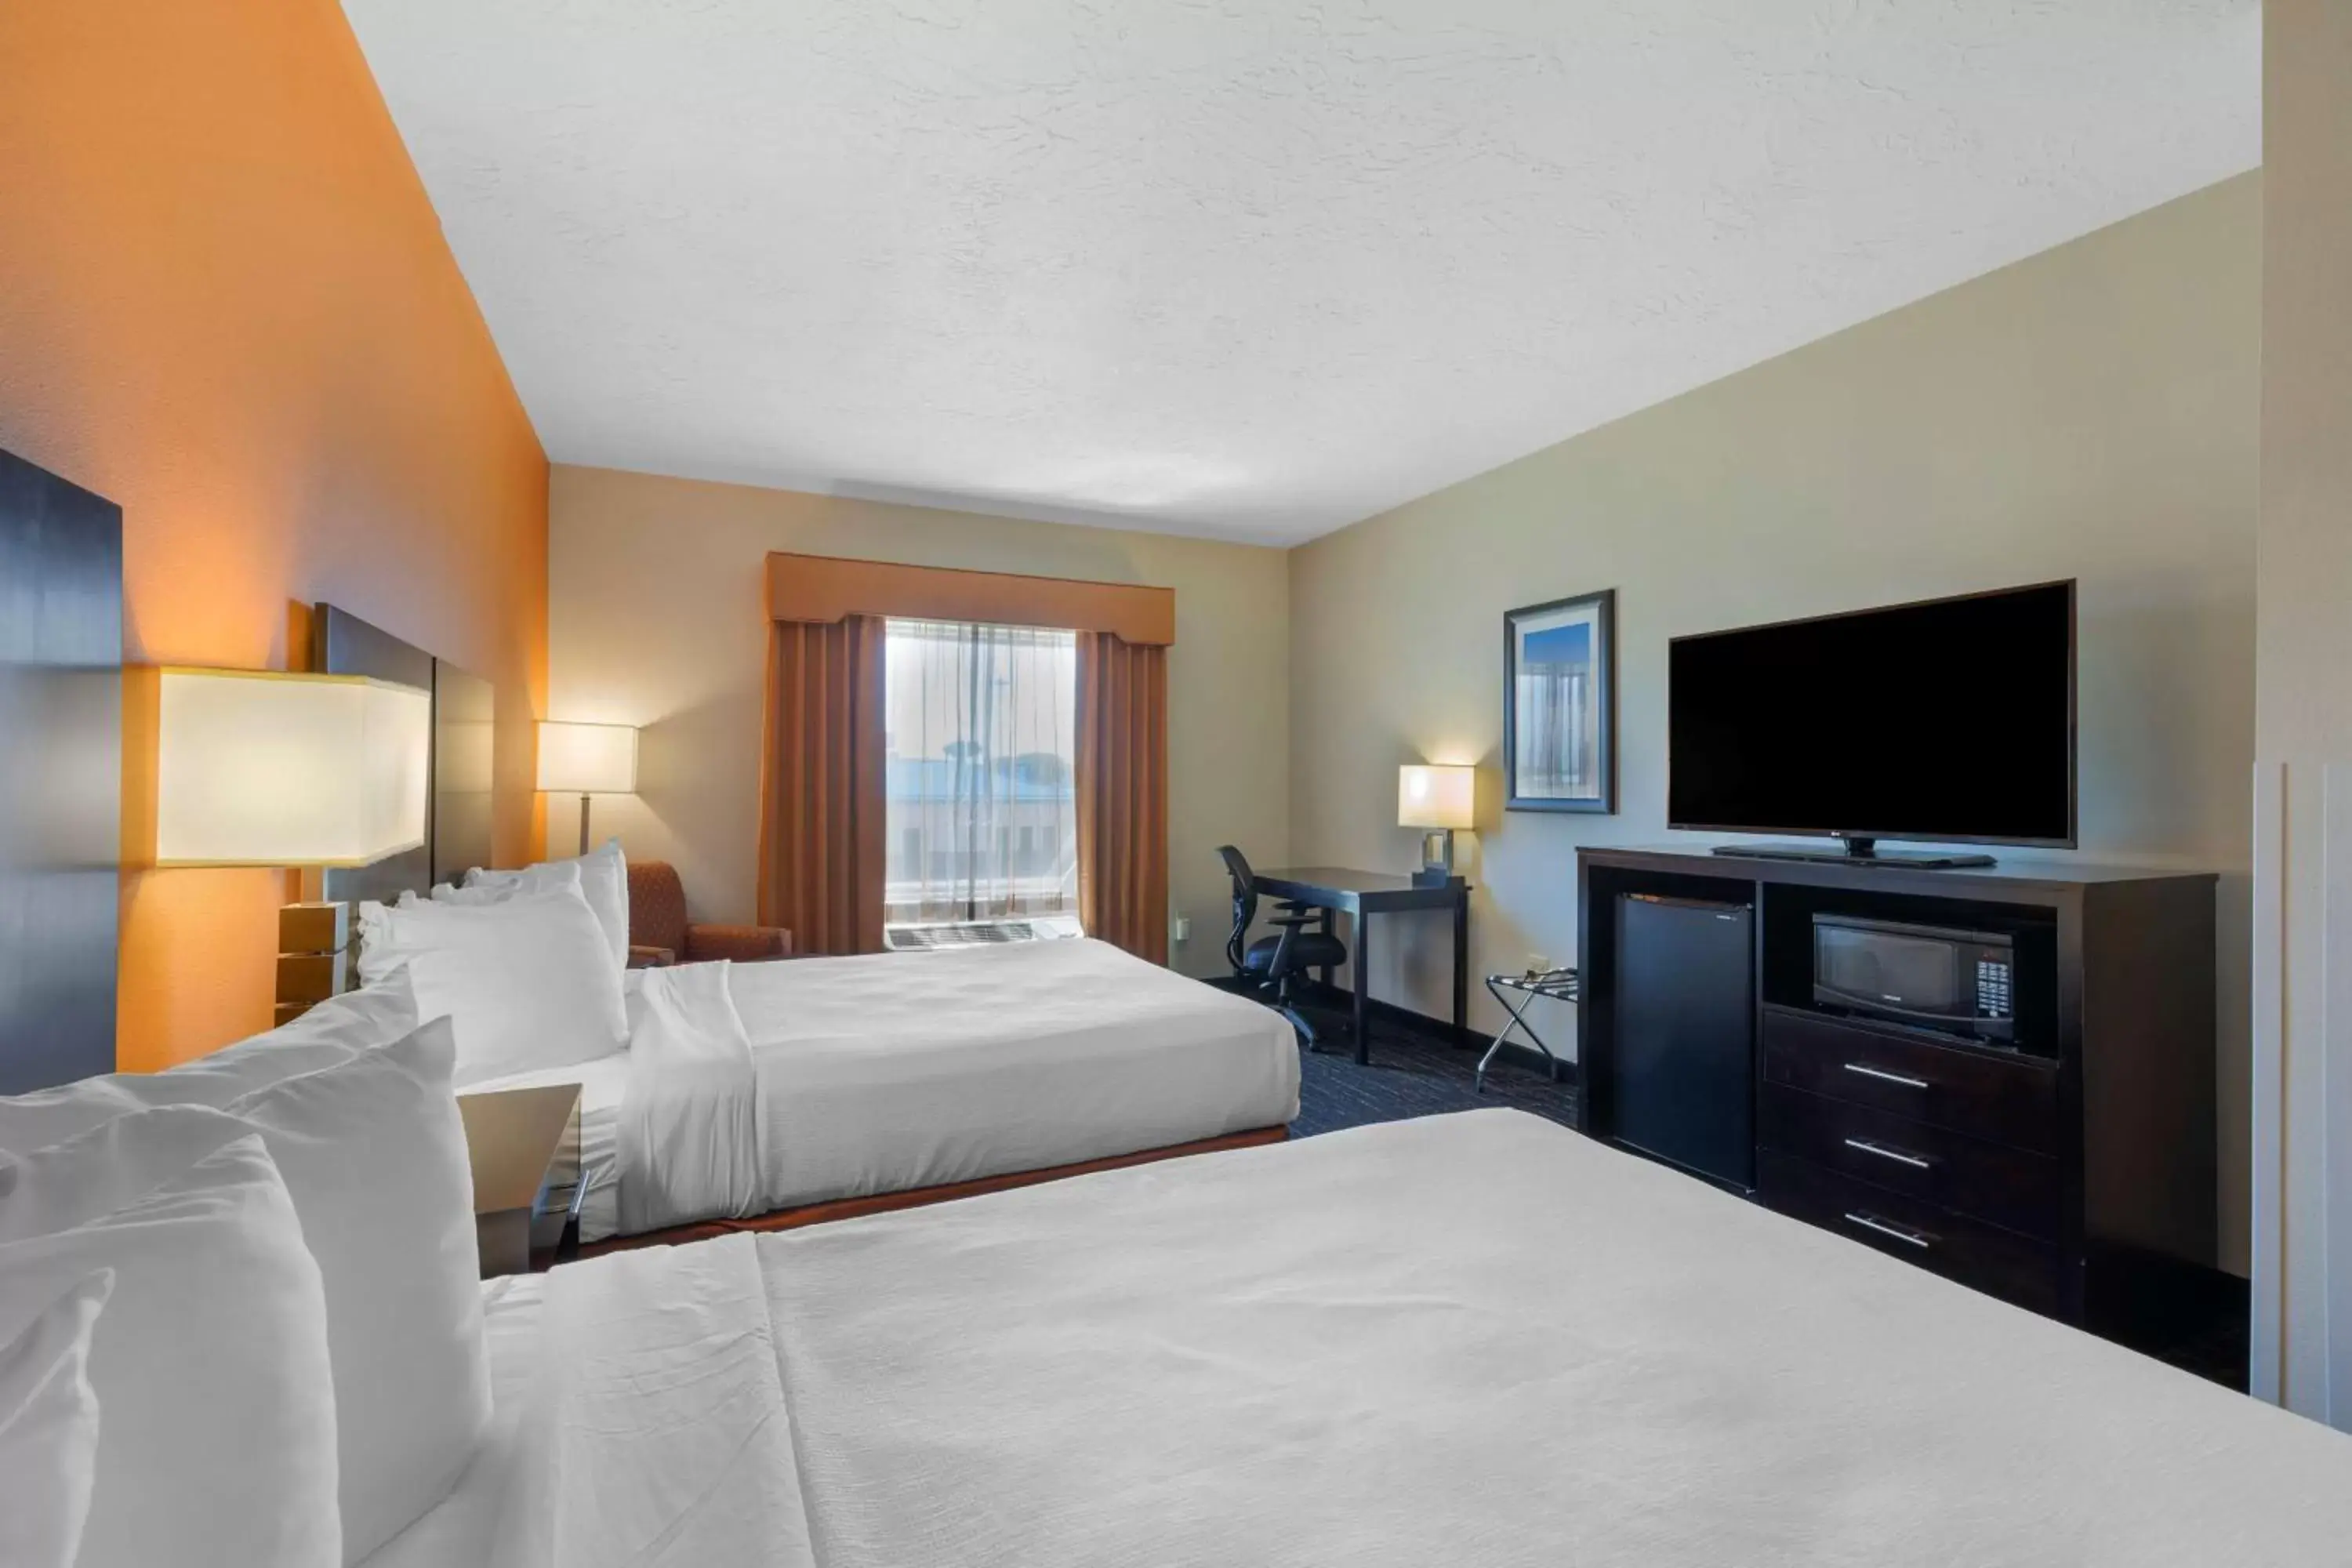 Bedroom, Bed in Best Western Plus North Platte Inn & Suites